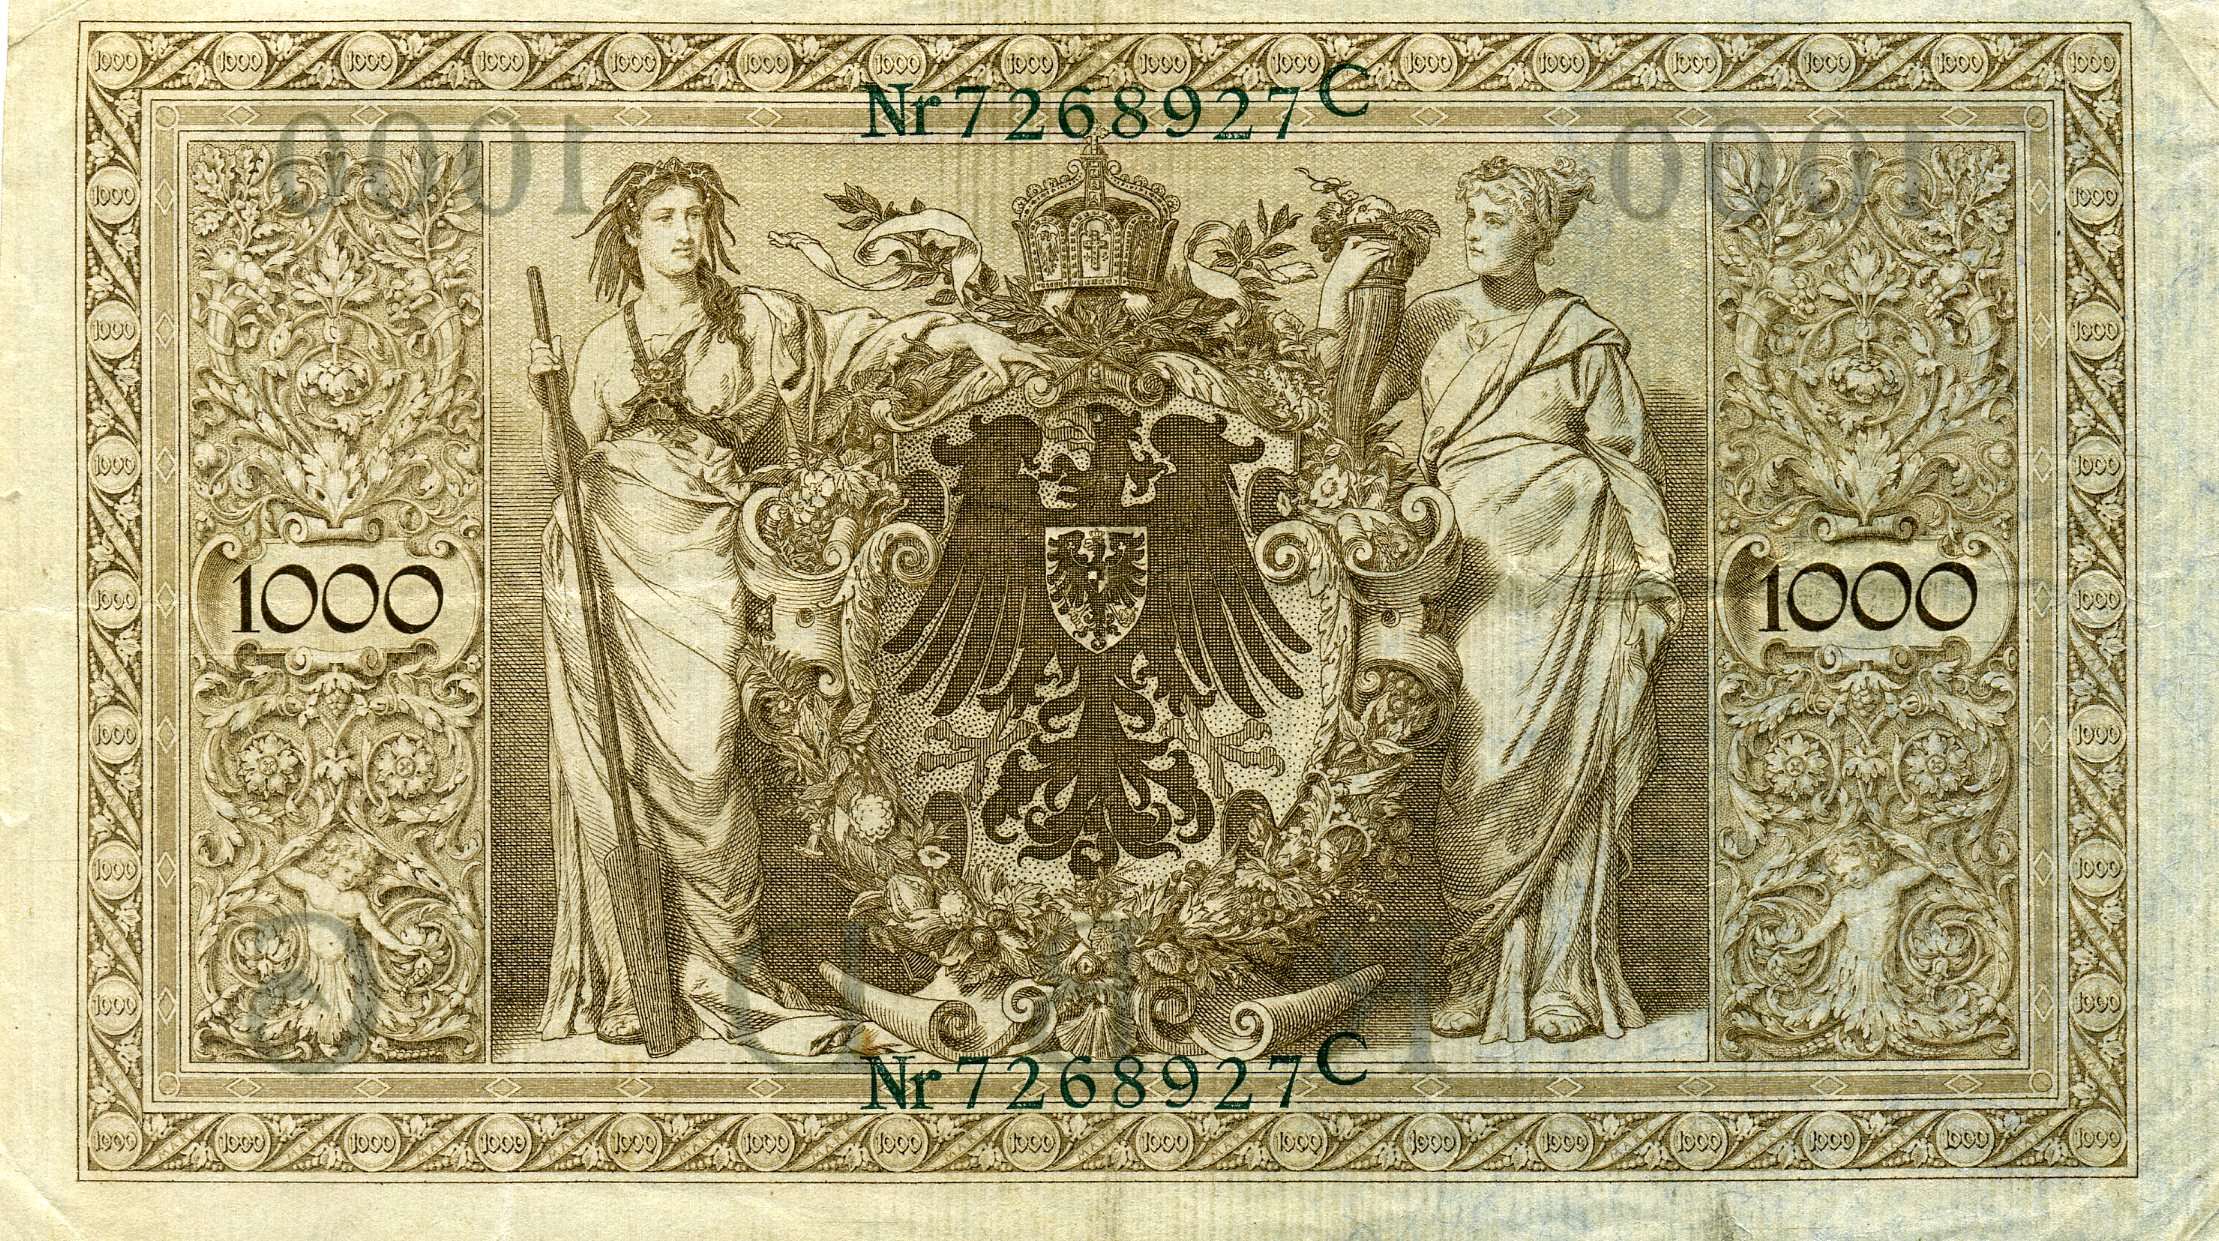 1000 марок 21 апреля 1910 года. Зеленая печать. Реверс. Реферат Рефератович.